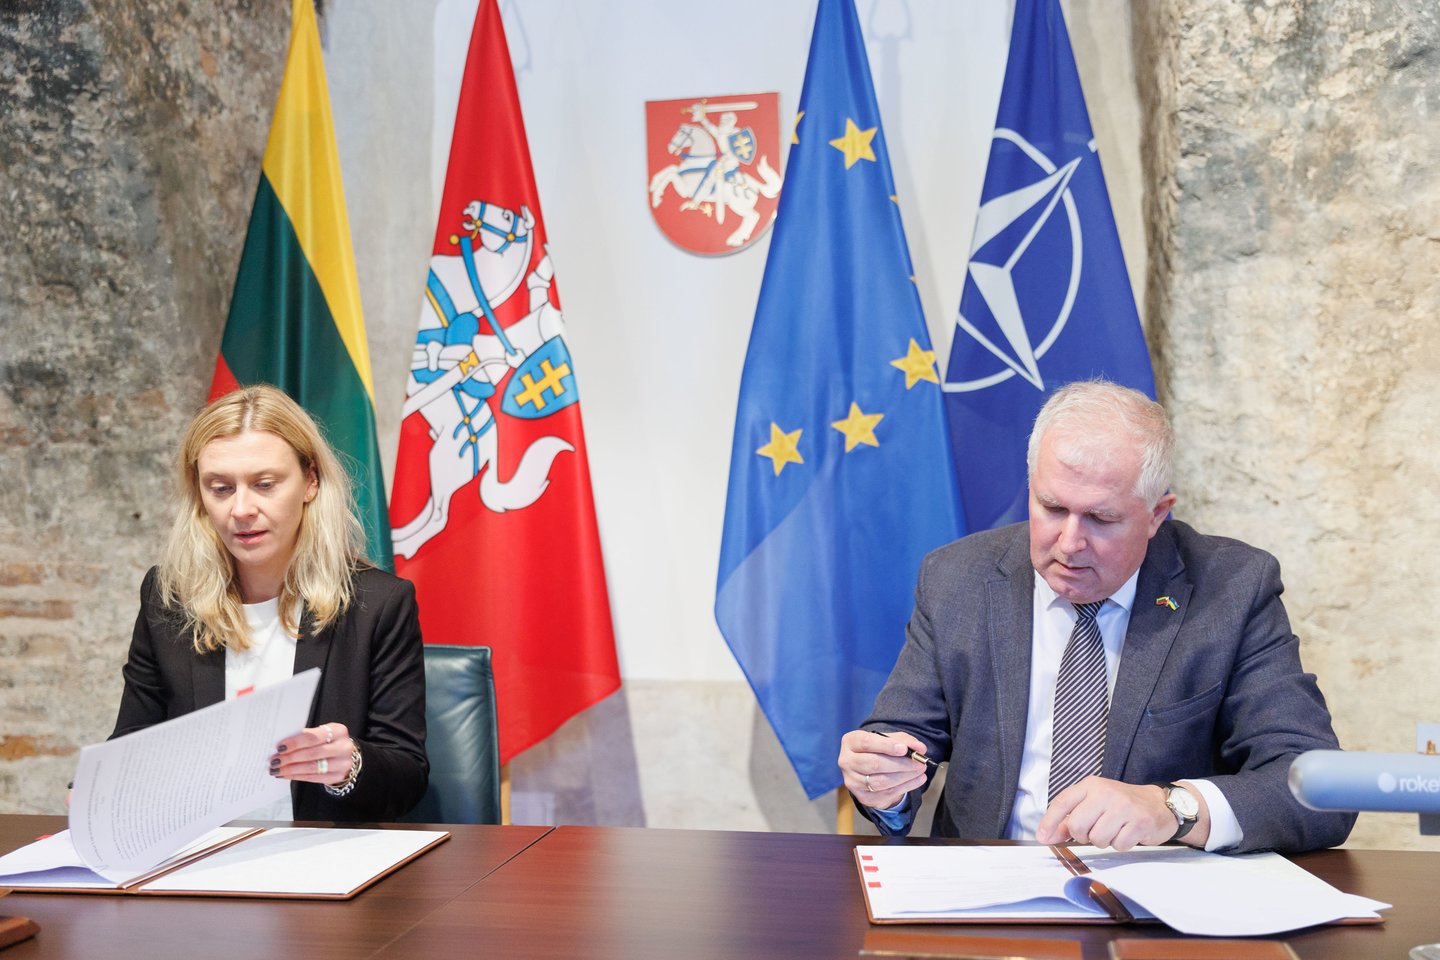  KAM penktadienį pasirašė sutartį dėl Ukrainai skirtų dronų kamikadzių įsigijimo iš Lenkijos įmonės.<br> T.Bauro nuotr.